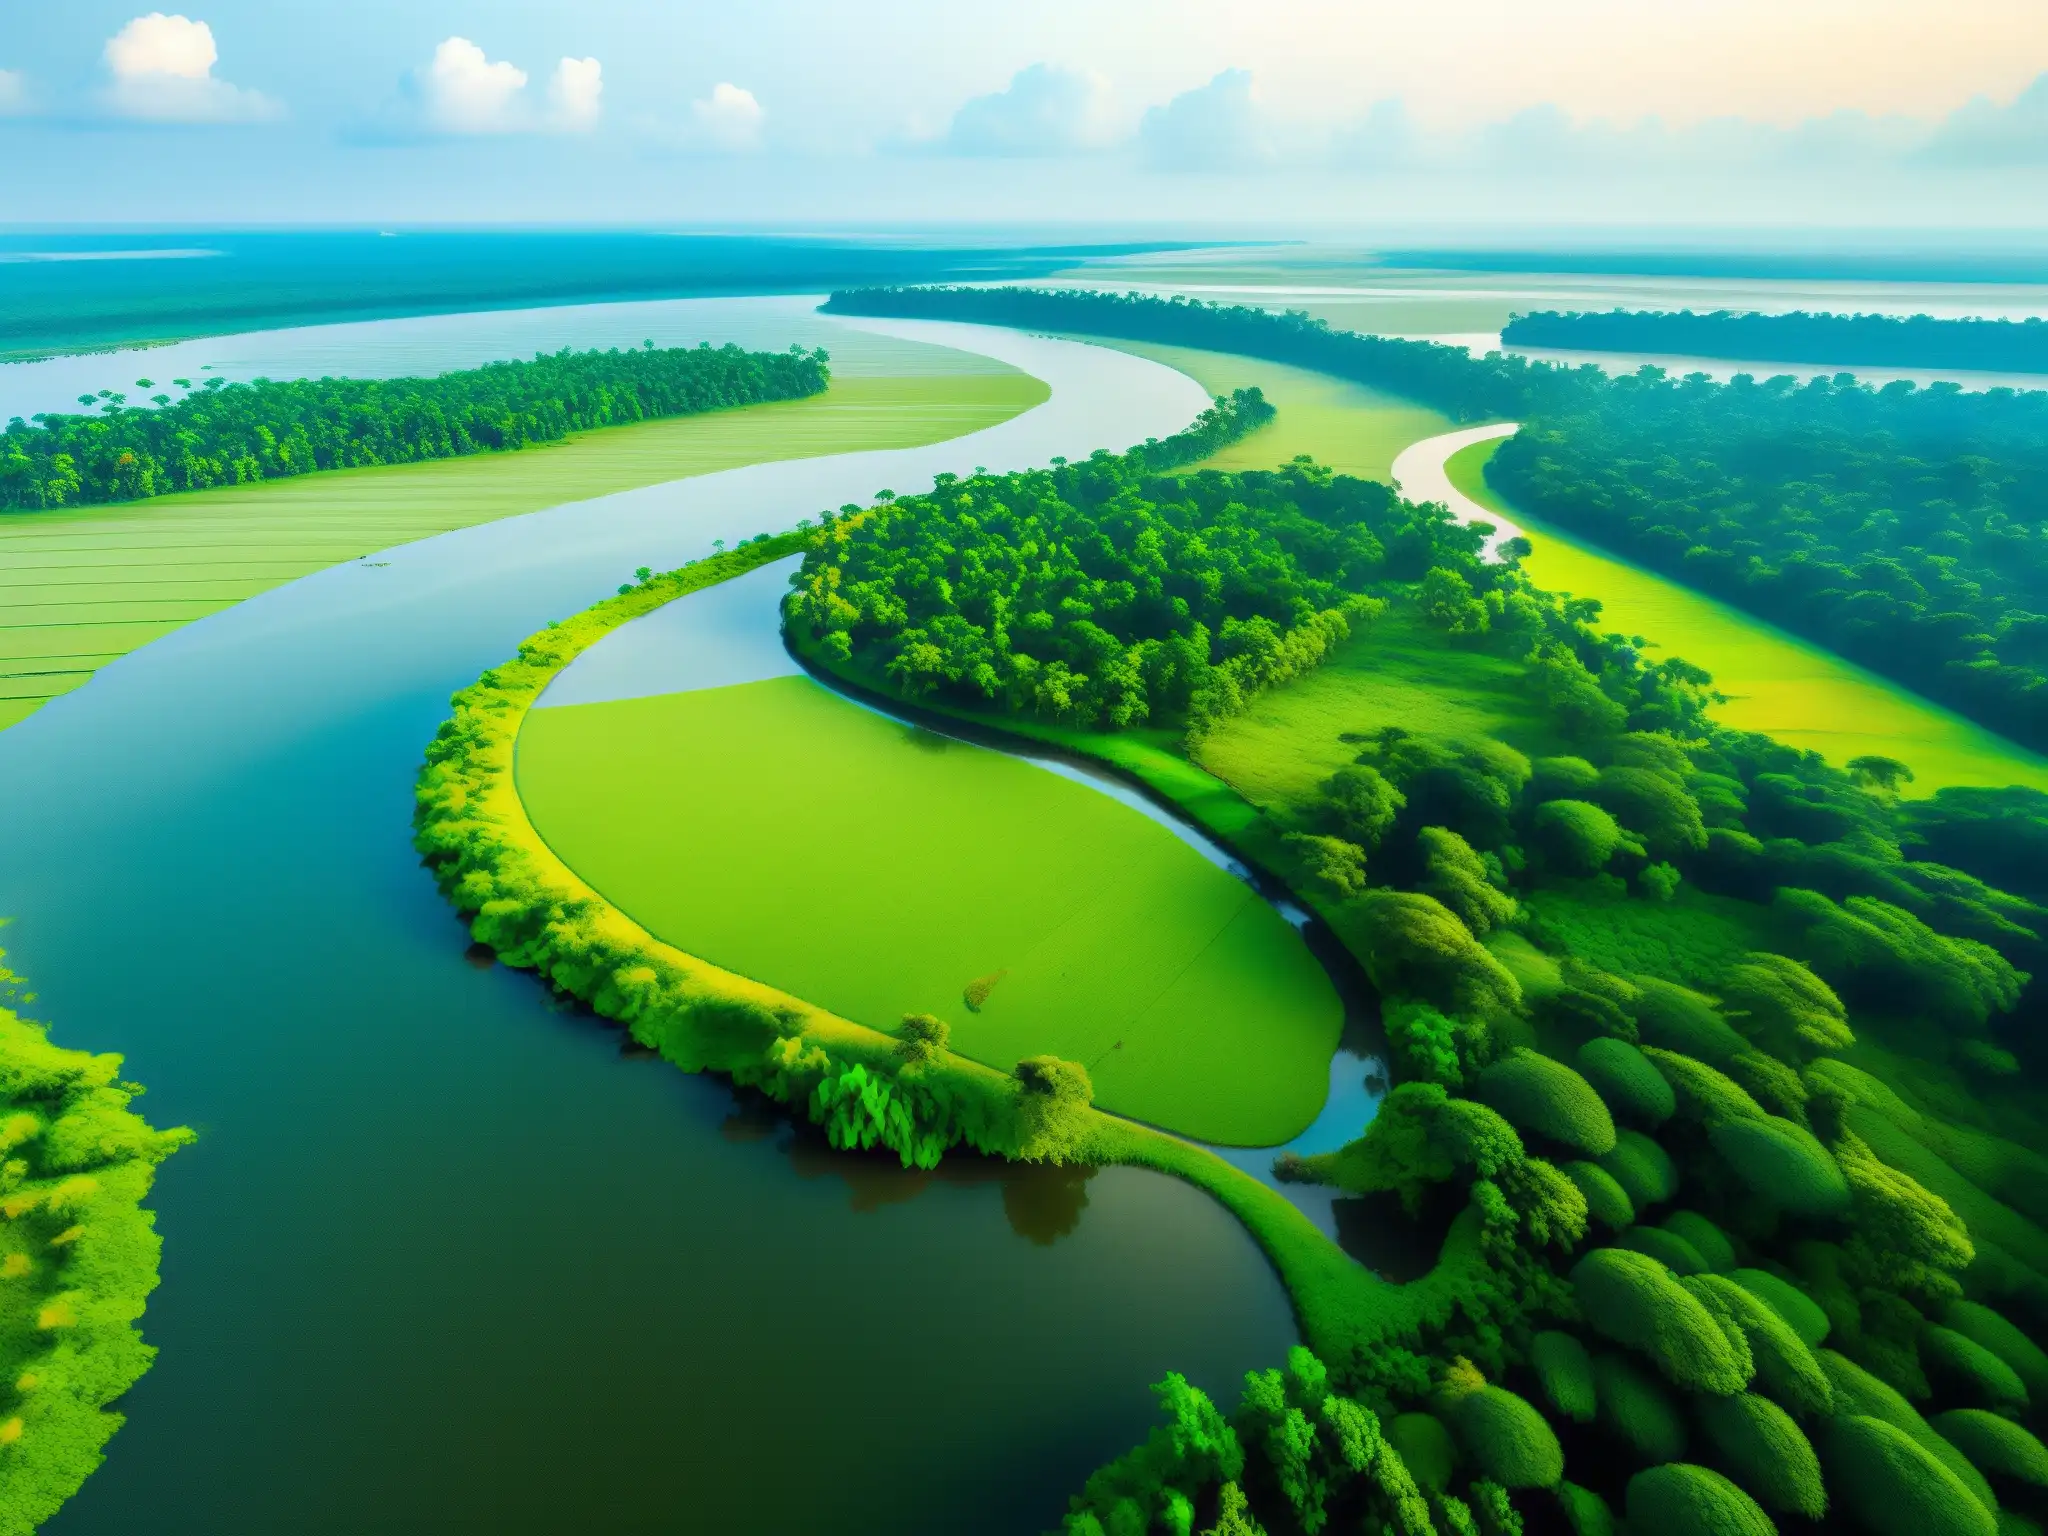 Vista aérea de la exuberante Isla Majuli, con ríos serpenteantes y vegetación vibrante, revelando la verdad oculta Isla Majuli leyenda